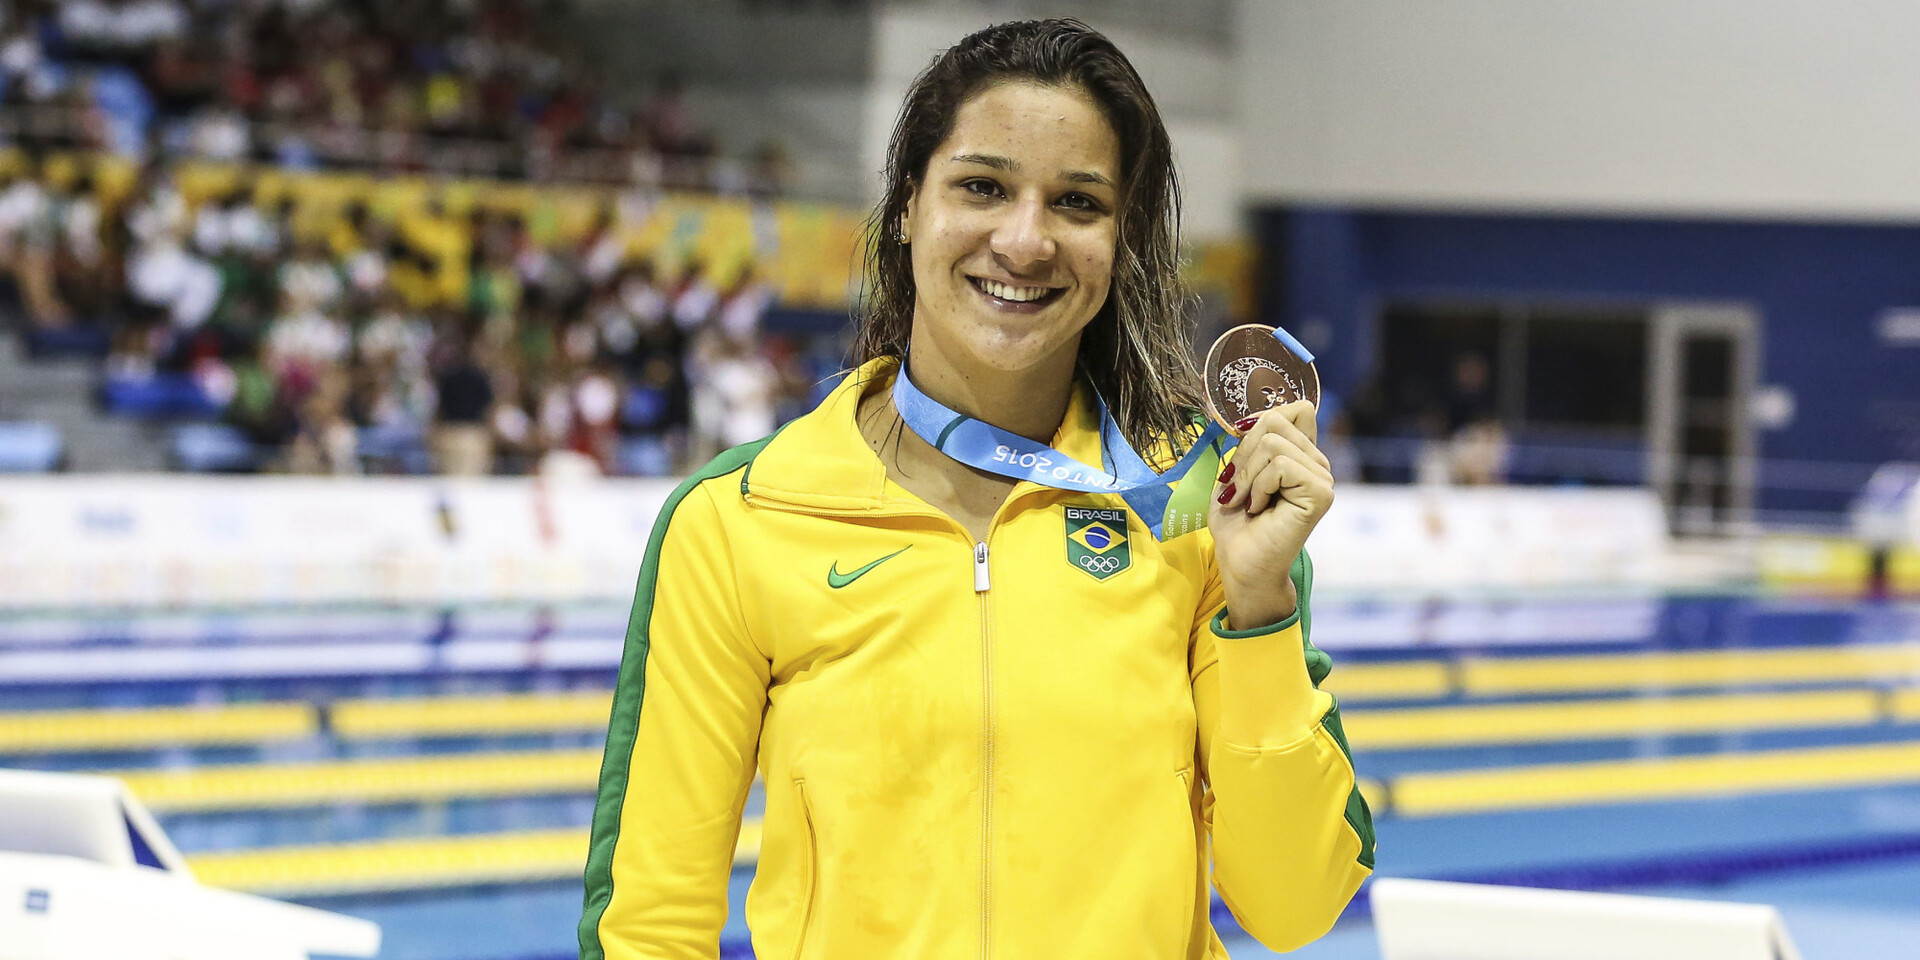 Medalhista panamericana, a nadadora Joanna Maranhão afirmou que foi chamada de “vagabunda petista” enquanto andava de bike em SP